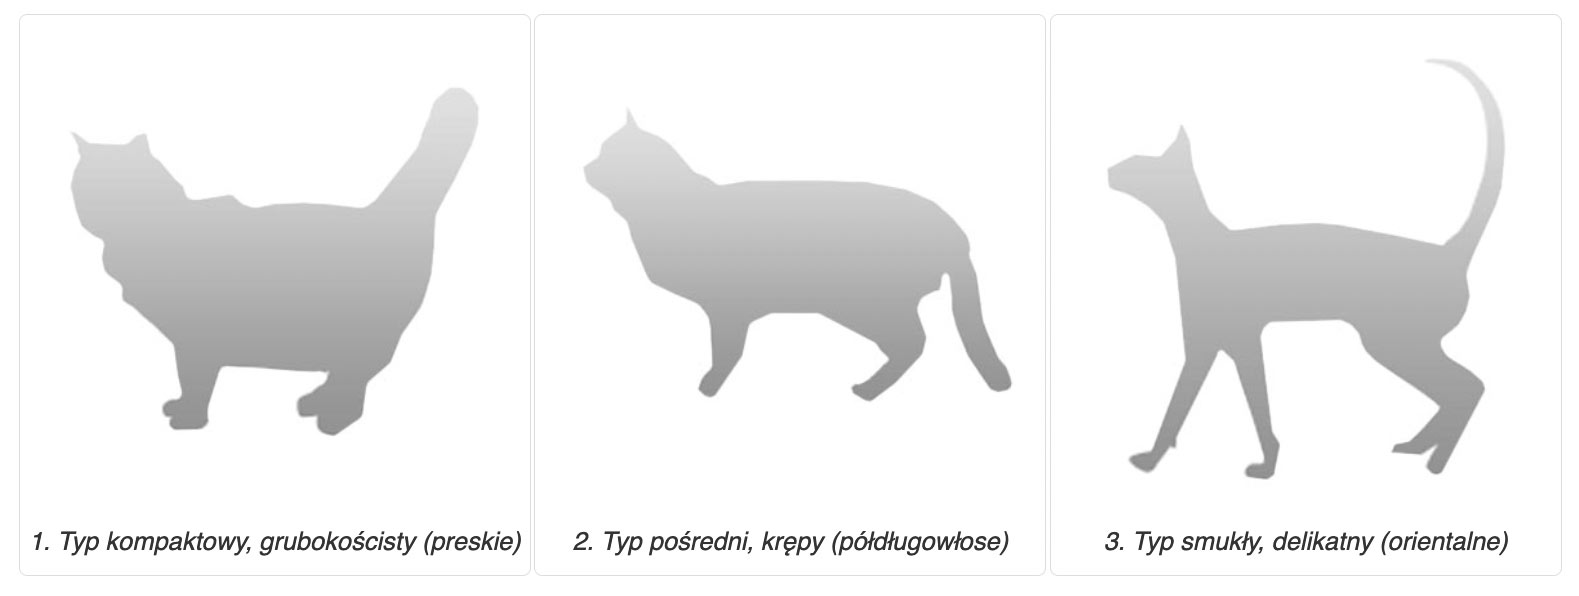 typy budowy kotów - kompaktowy, pośredni, smukły